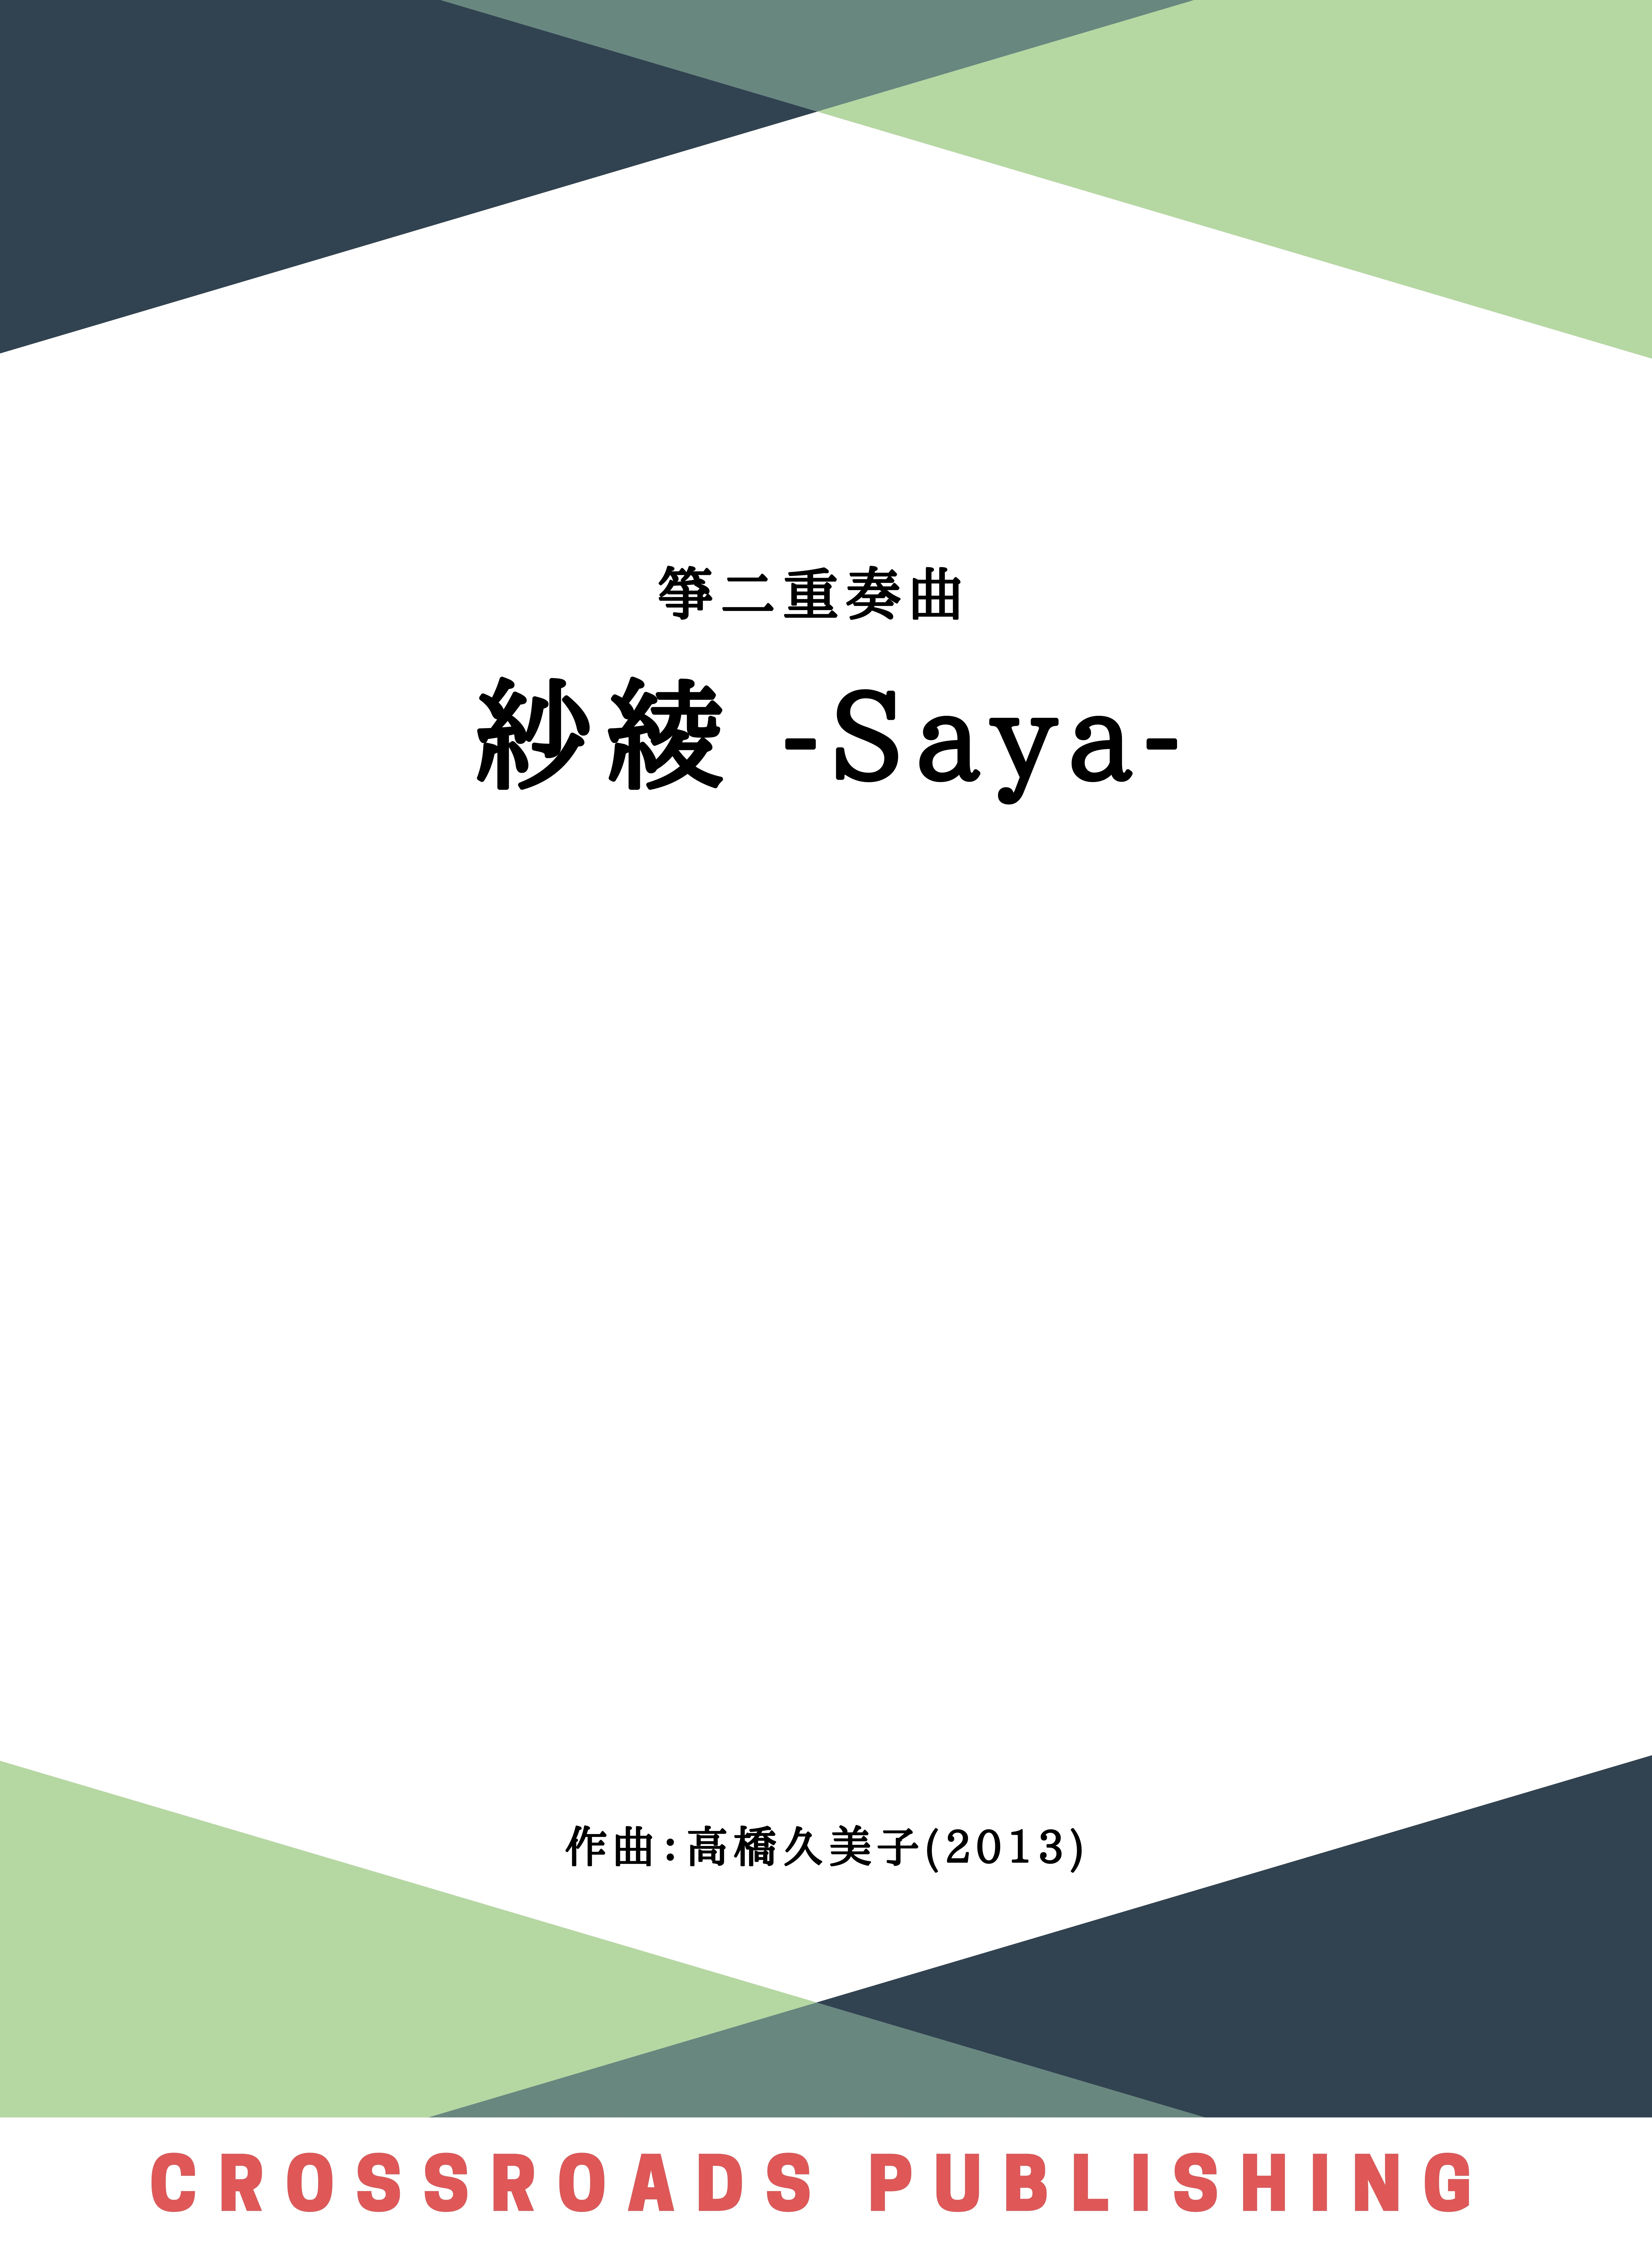 【楽譜】箏二重奏曲 紗綾 -Saya- (五線譜) A4判